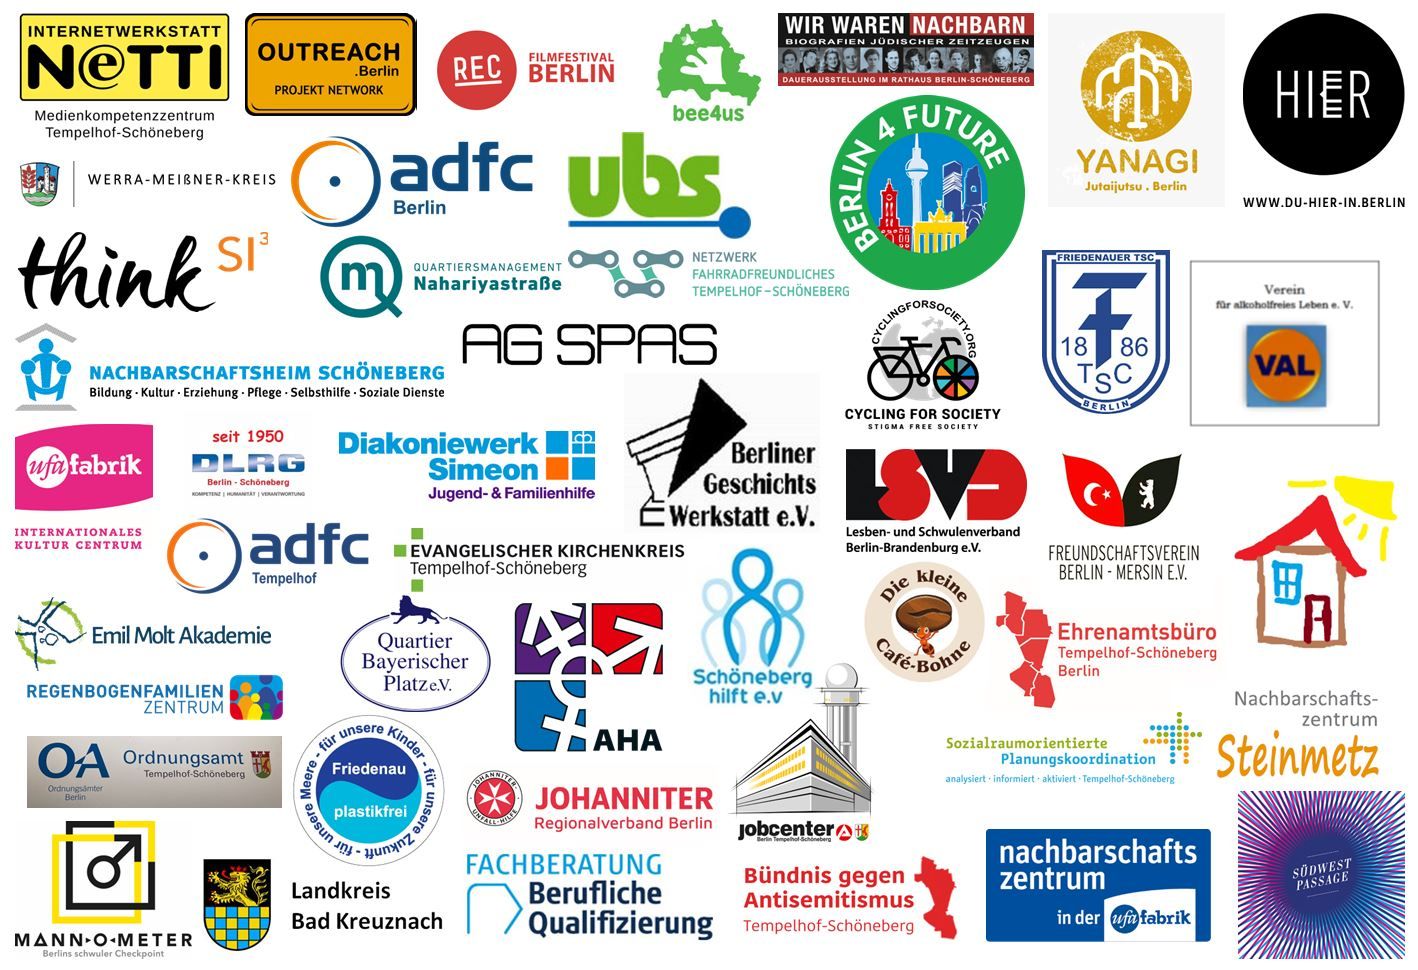 Bildvergrößerung: Logos der teilnehmenden Organisationen, die unter der Grafik aufgelistet sind